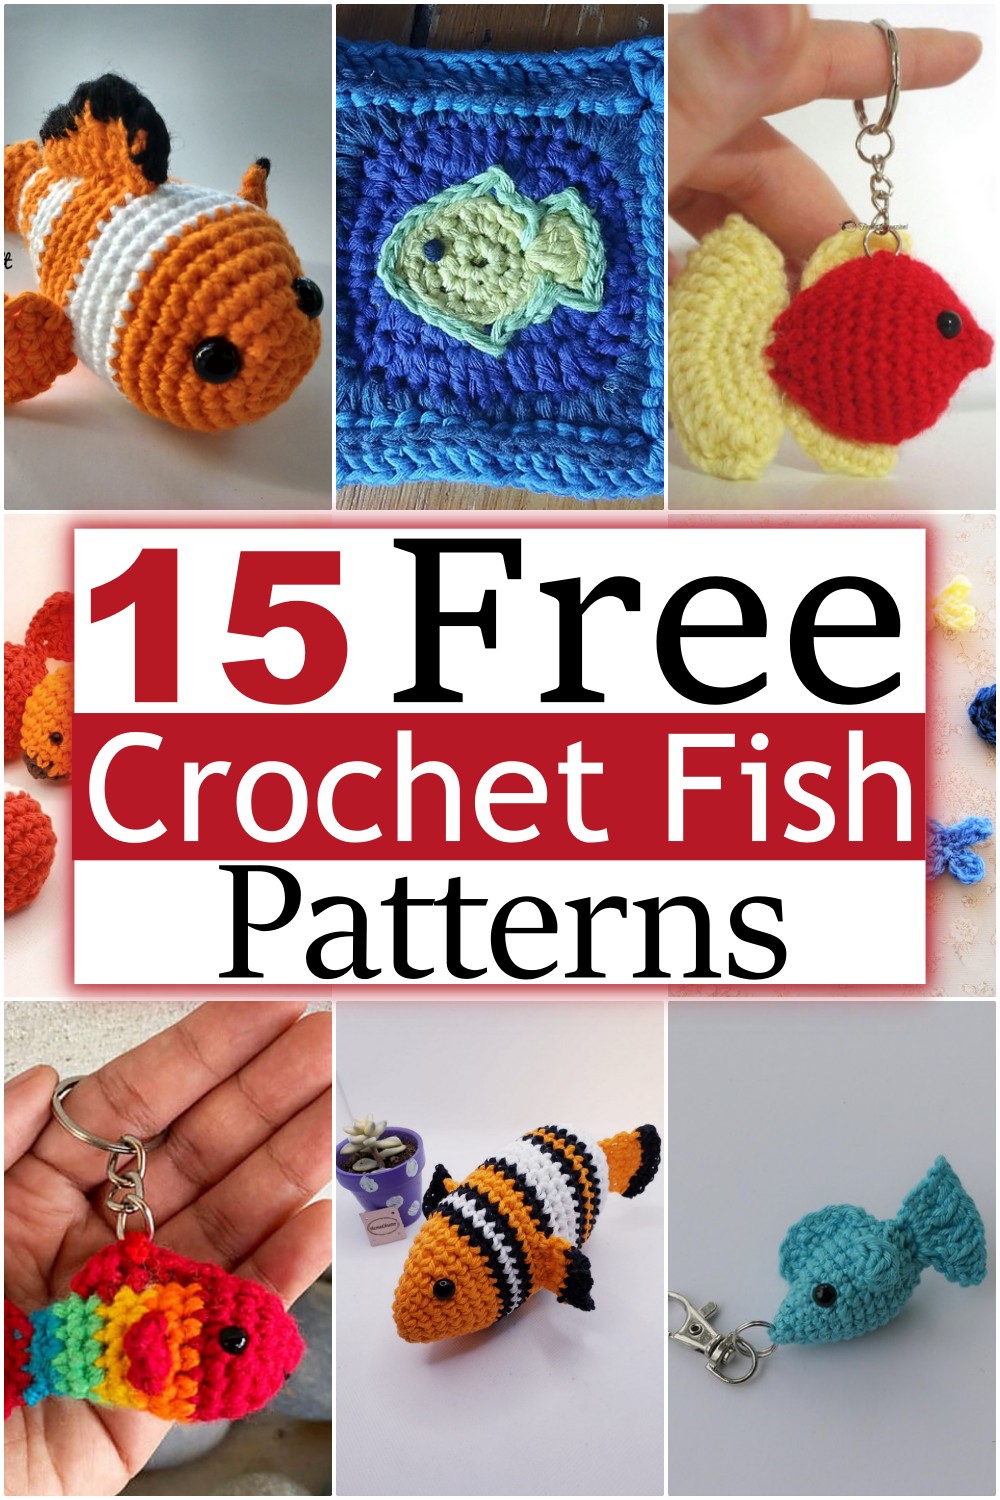  Free Crochet Fish Patterns